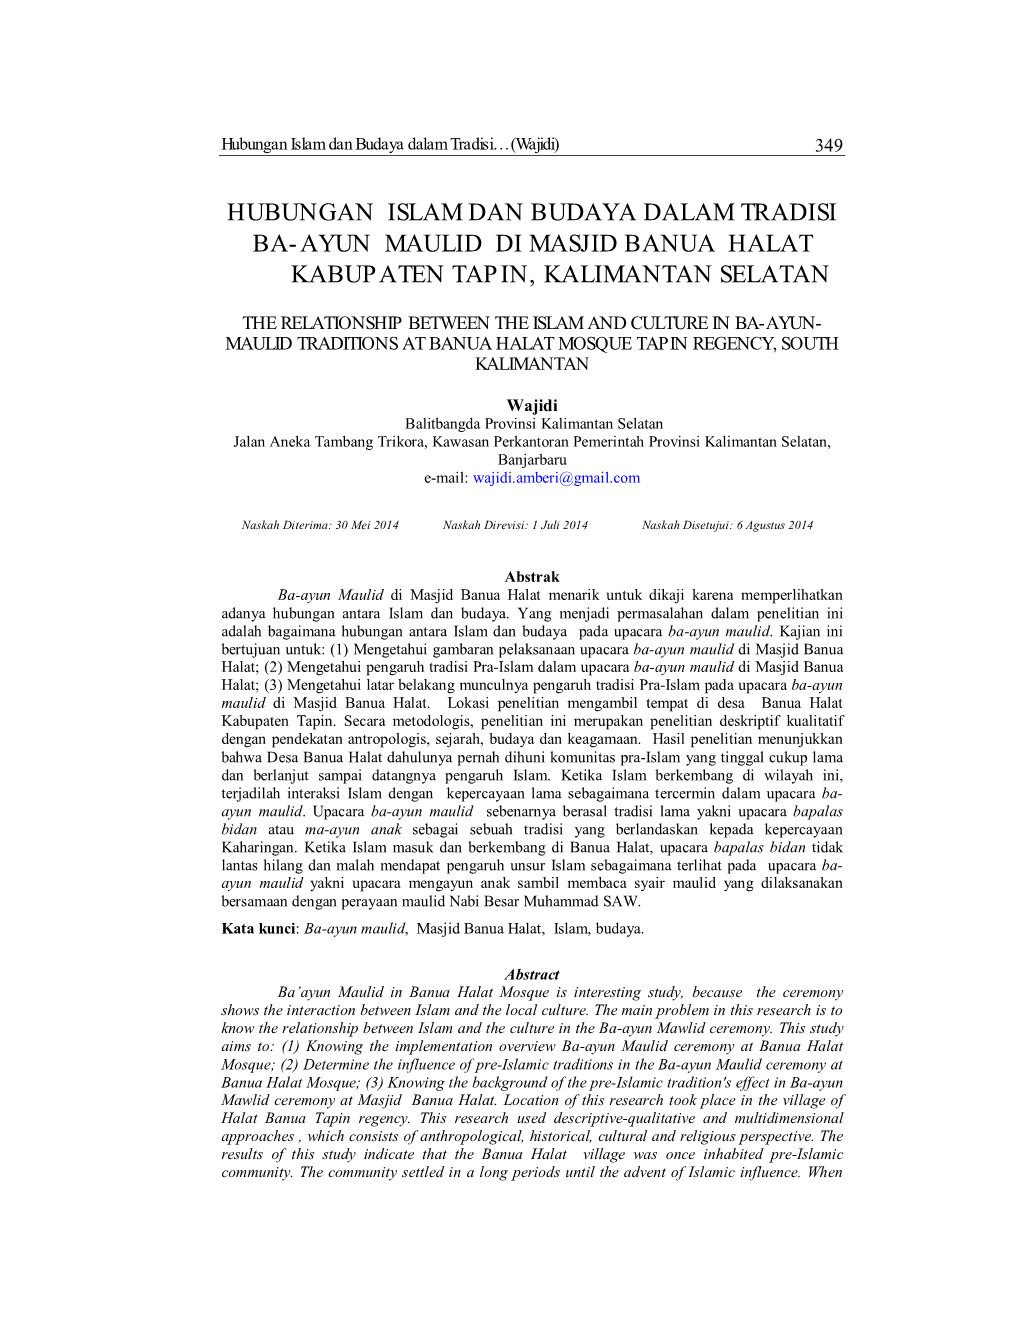 Hubungan Islam Dan Budaya Dalam Tradisi Ba-Ayun Maulid Di Masjid Banua Halat Kabupaten Tapin, Kalimantan Selatan